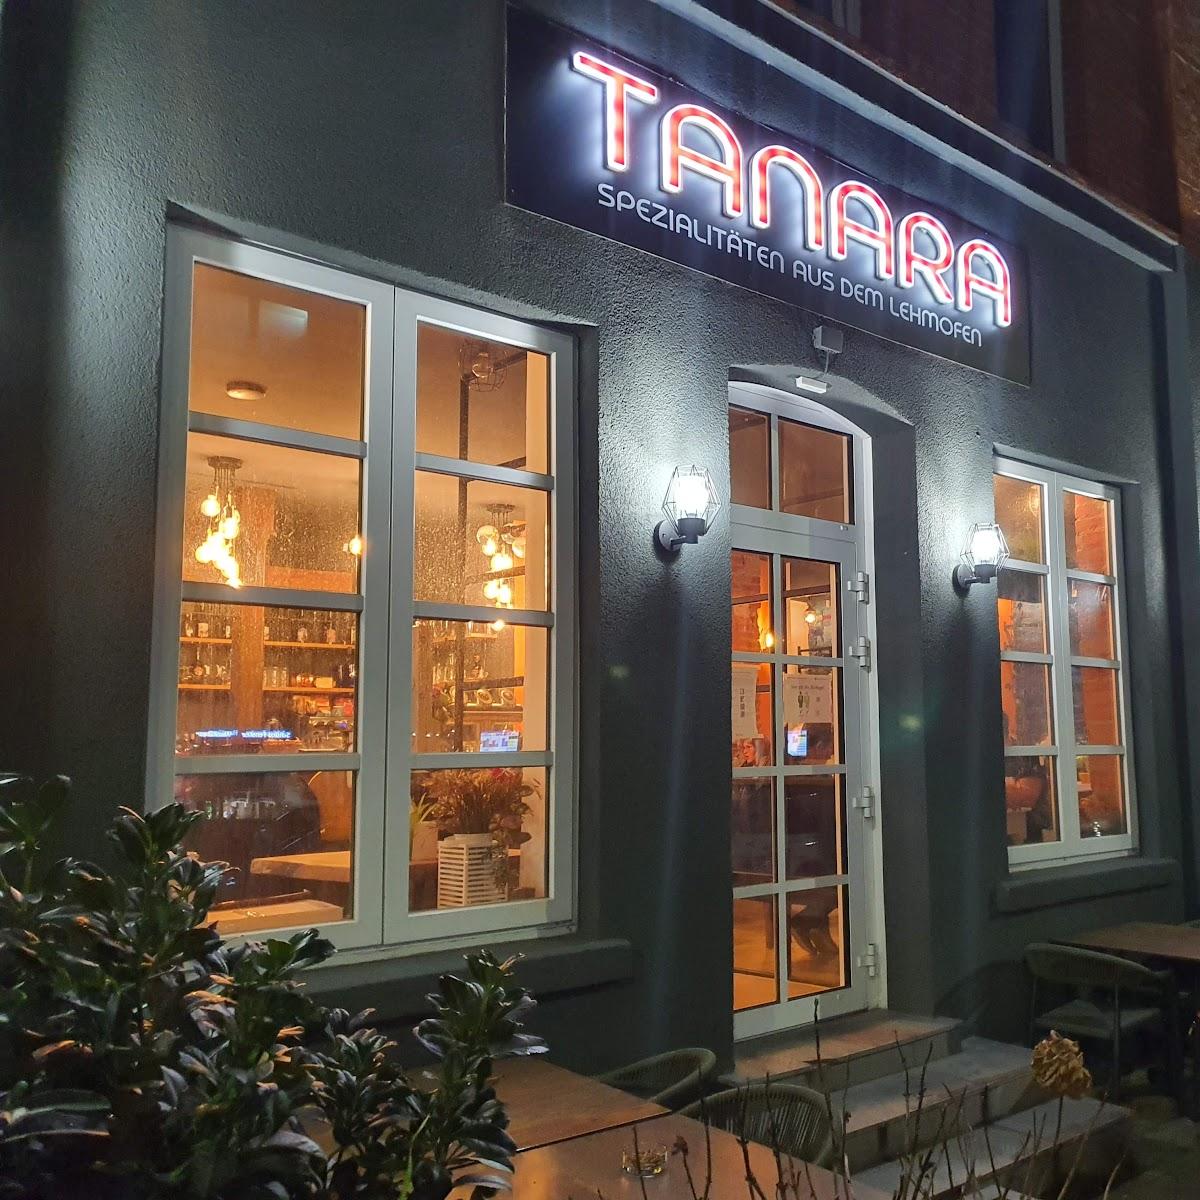 Restaurant "Tanara" in Hannover